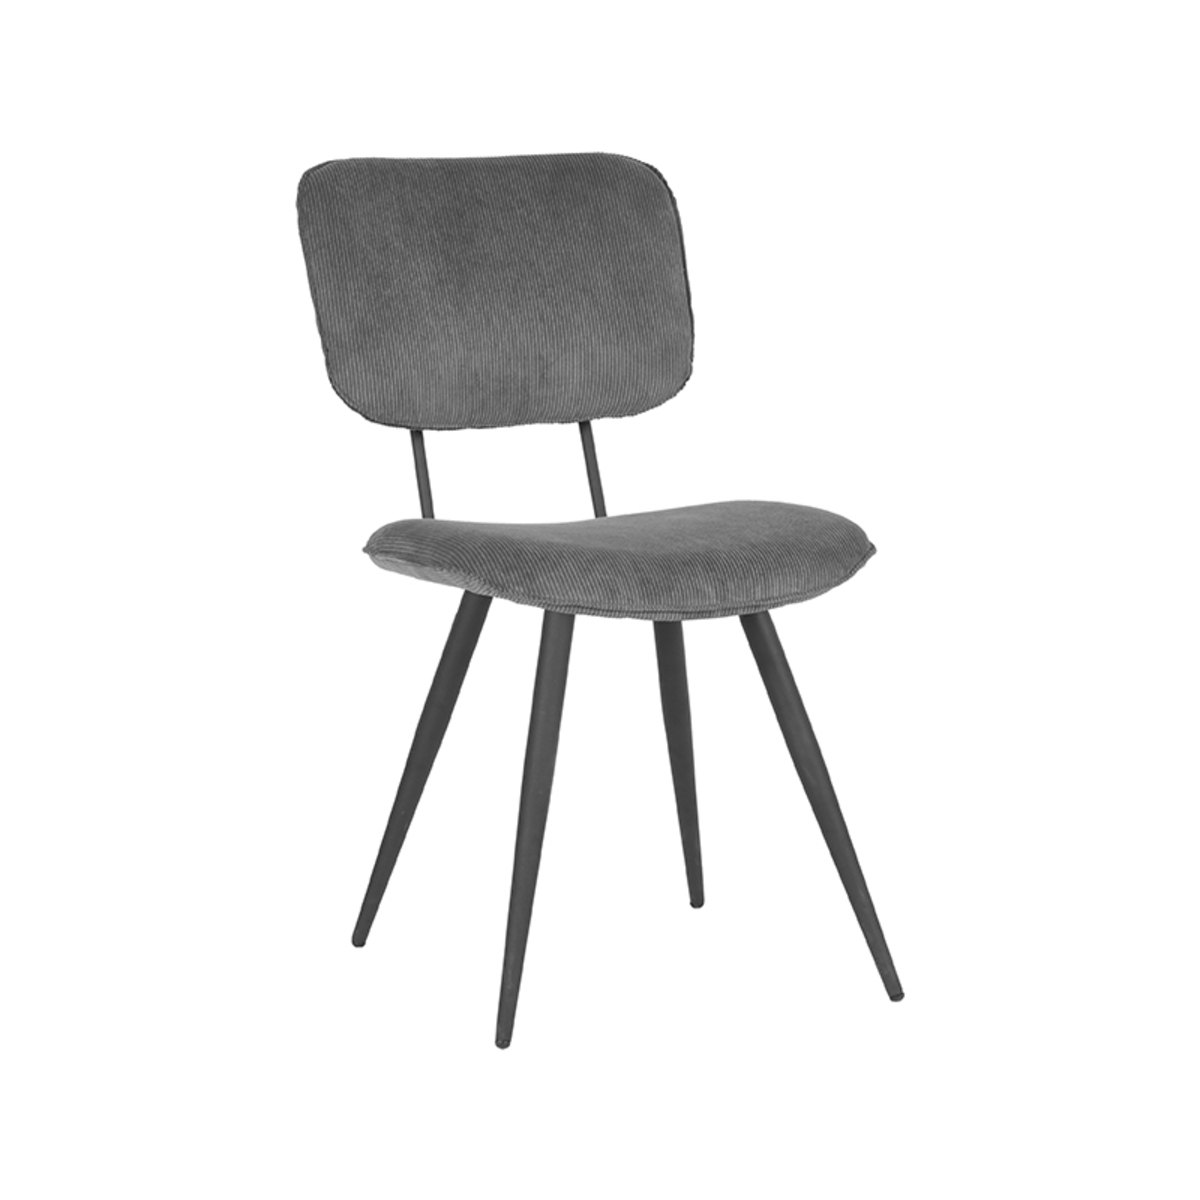 LABEL51 jídelní židle VIC šedá Color: Dark grey